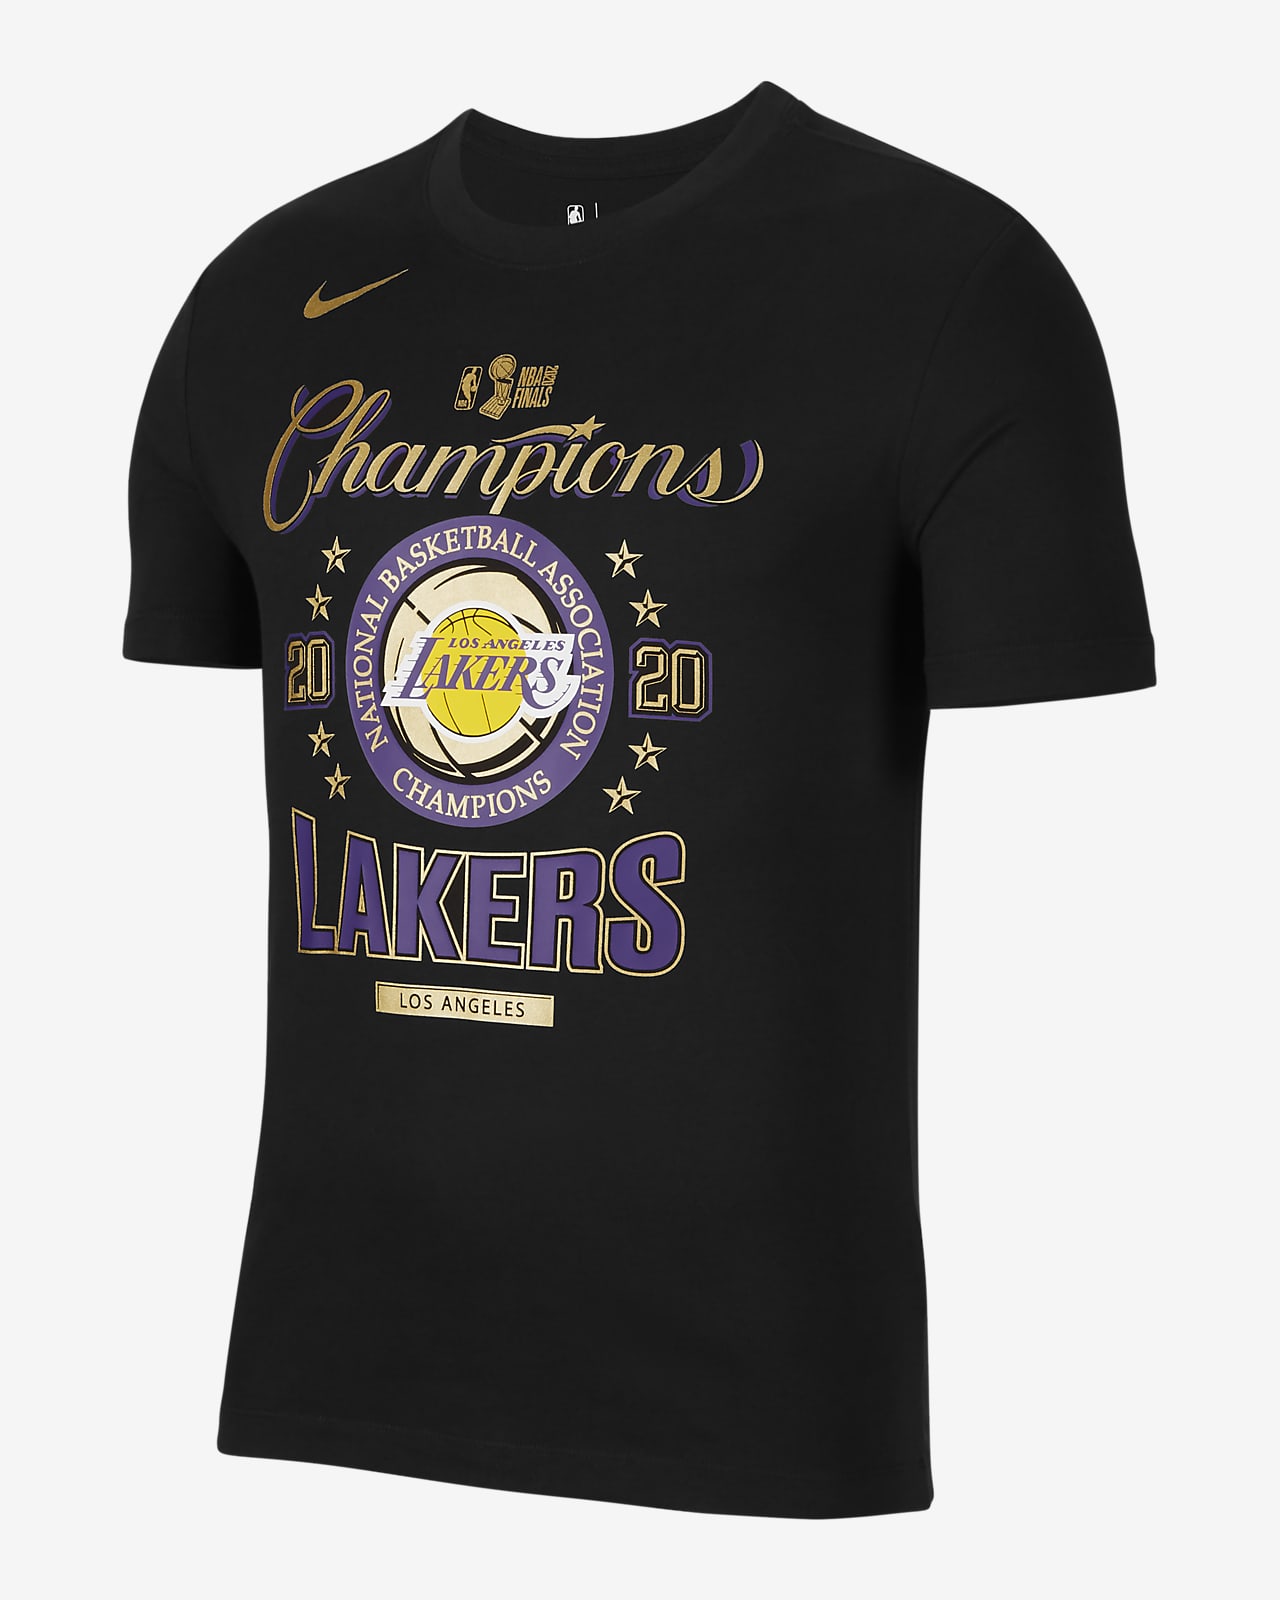 洛杉矶湖人队 Champions Nike NBA 男子T恤